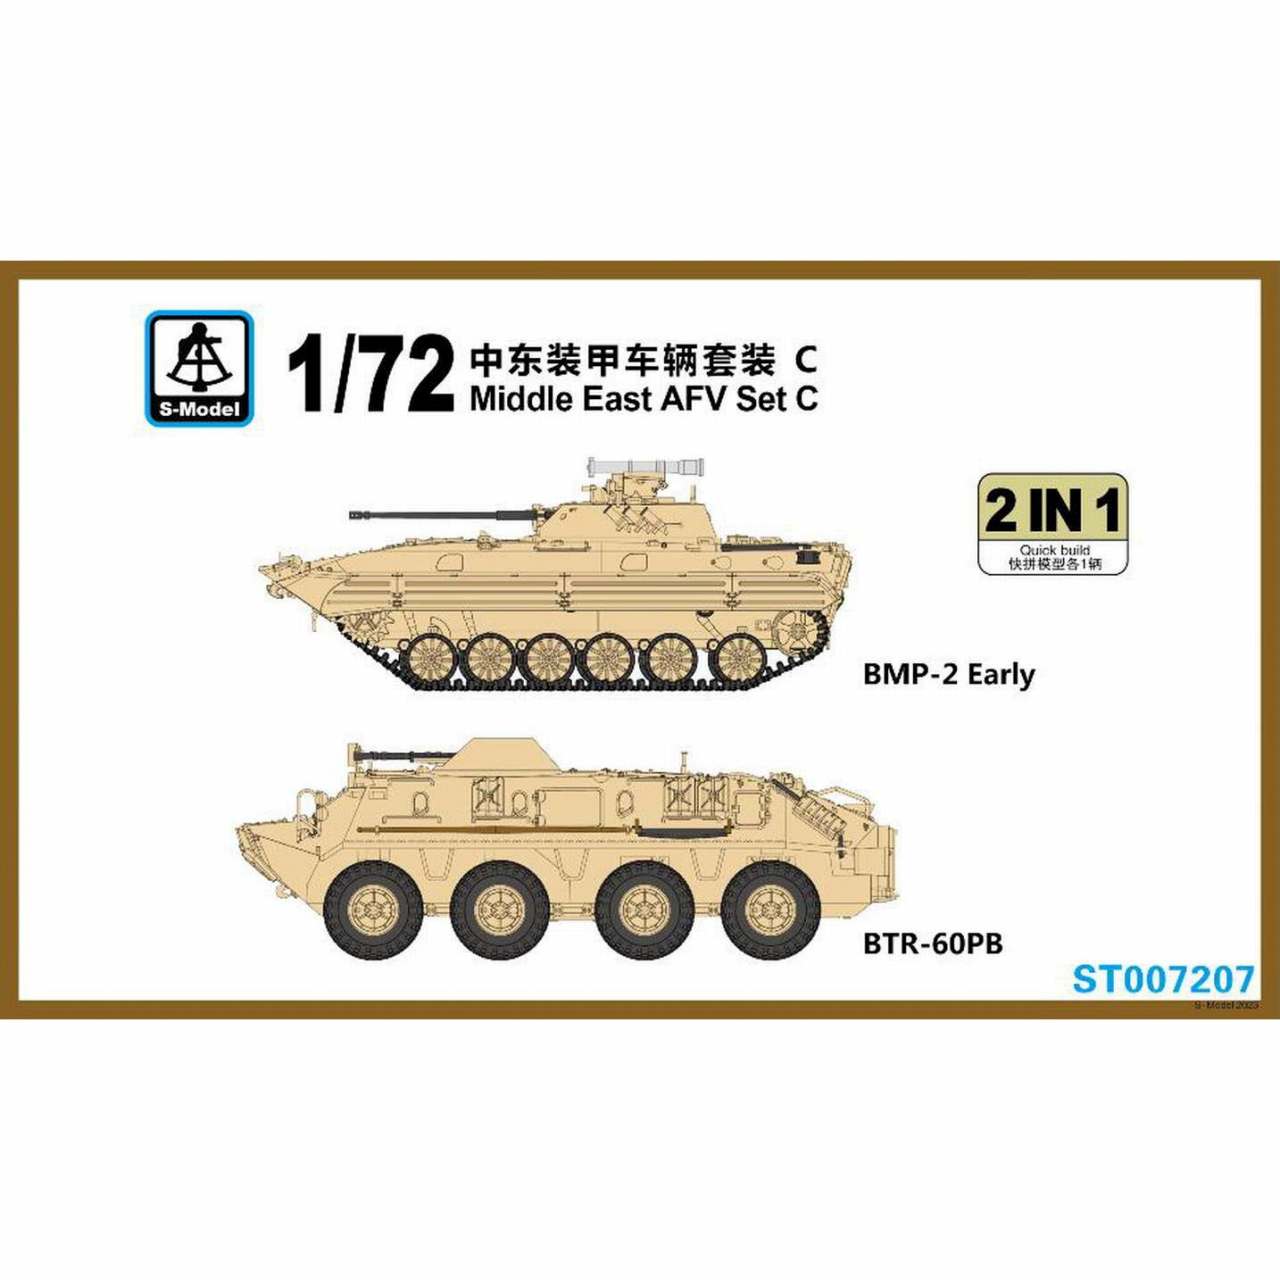 【新製品】ST007207 中東AFVセットC BMP-2 初期型 & BTR-60PB